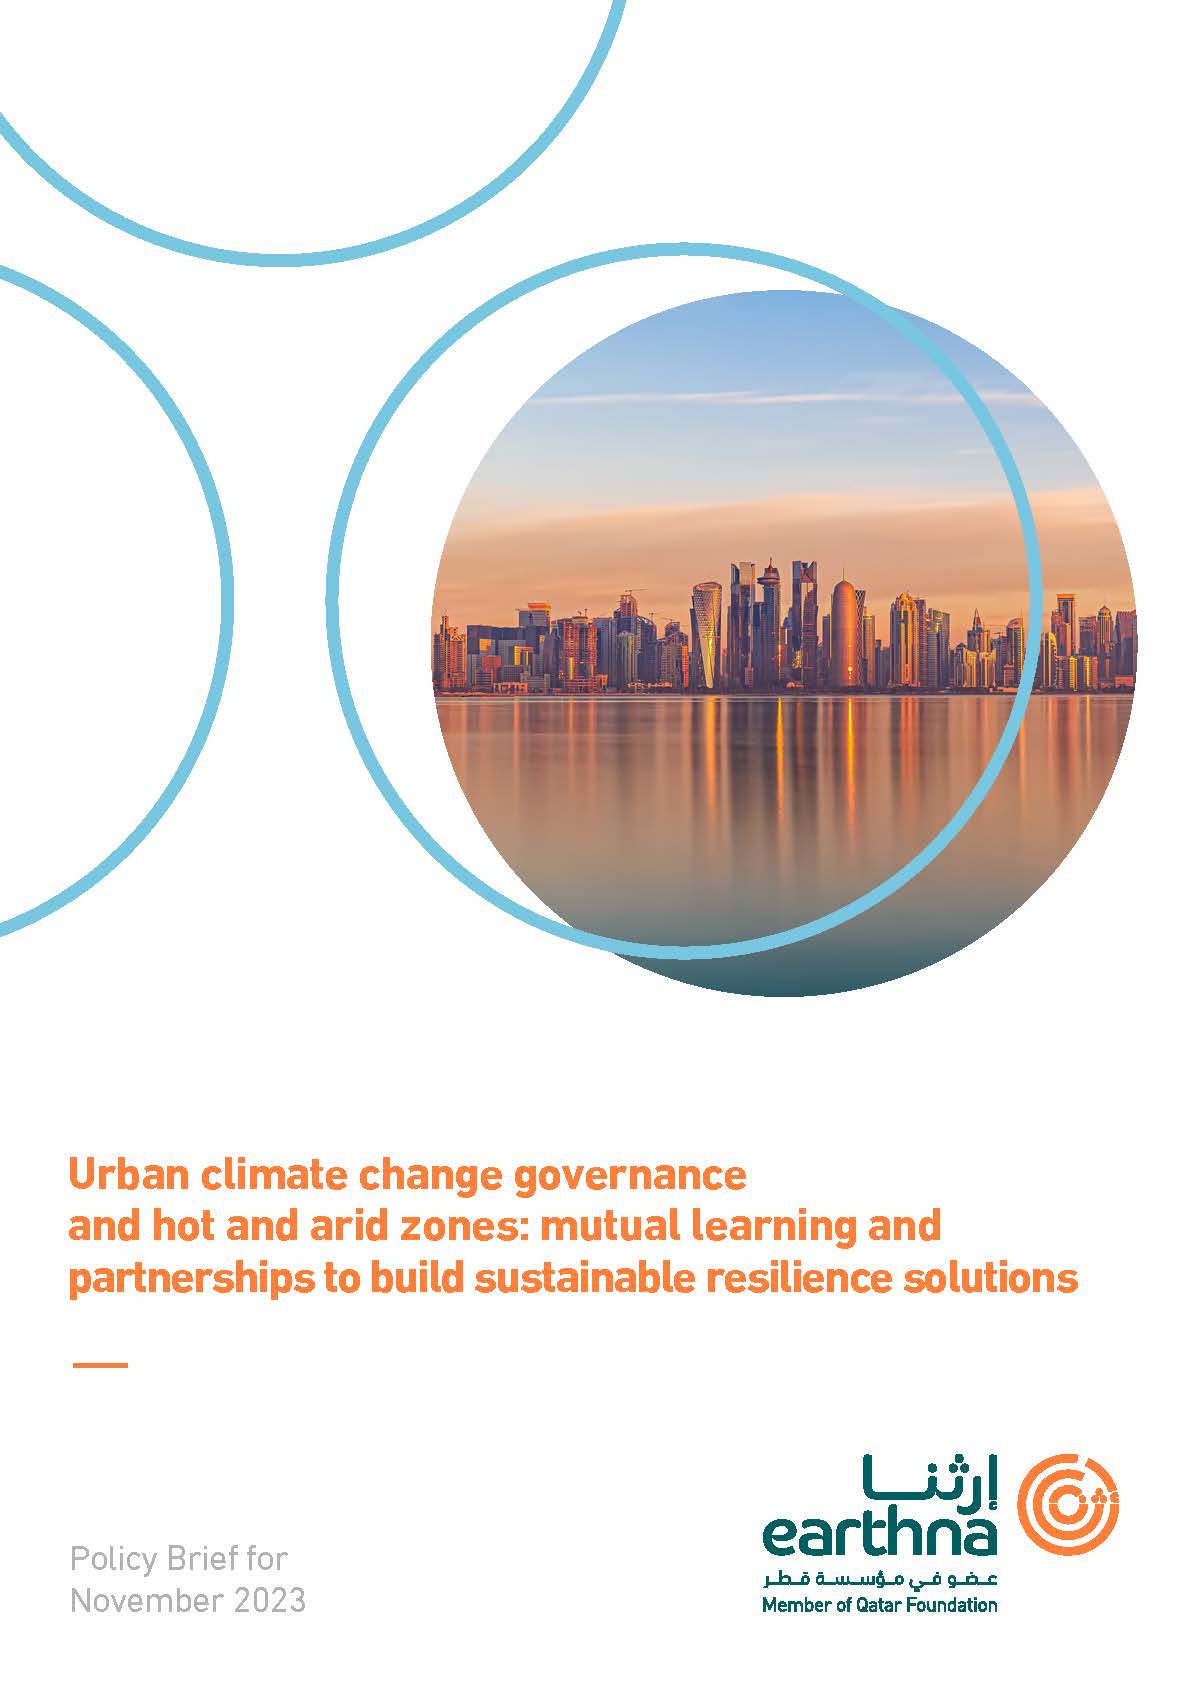 حوكمة تغير المناخ الحضرية والمناطق الحارة والجافة: المعرفة المتبادلة والشراكات لبناء حلول مرنة ومستدامة